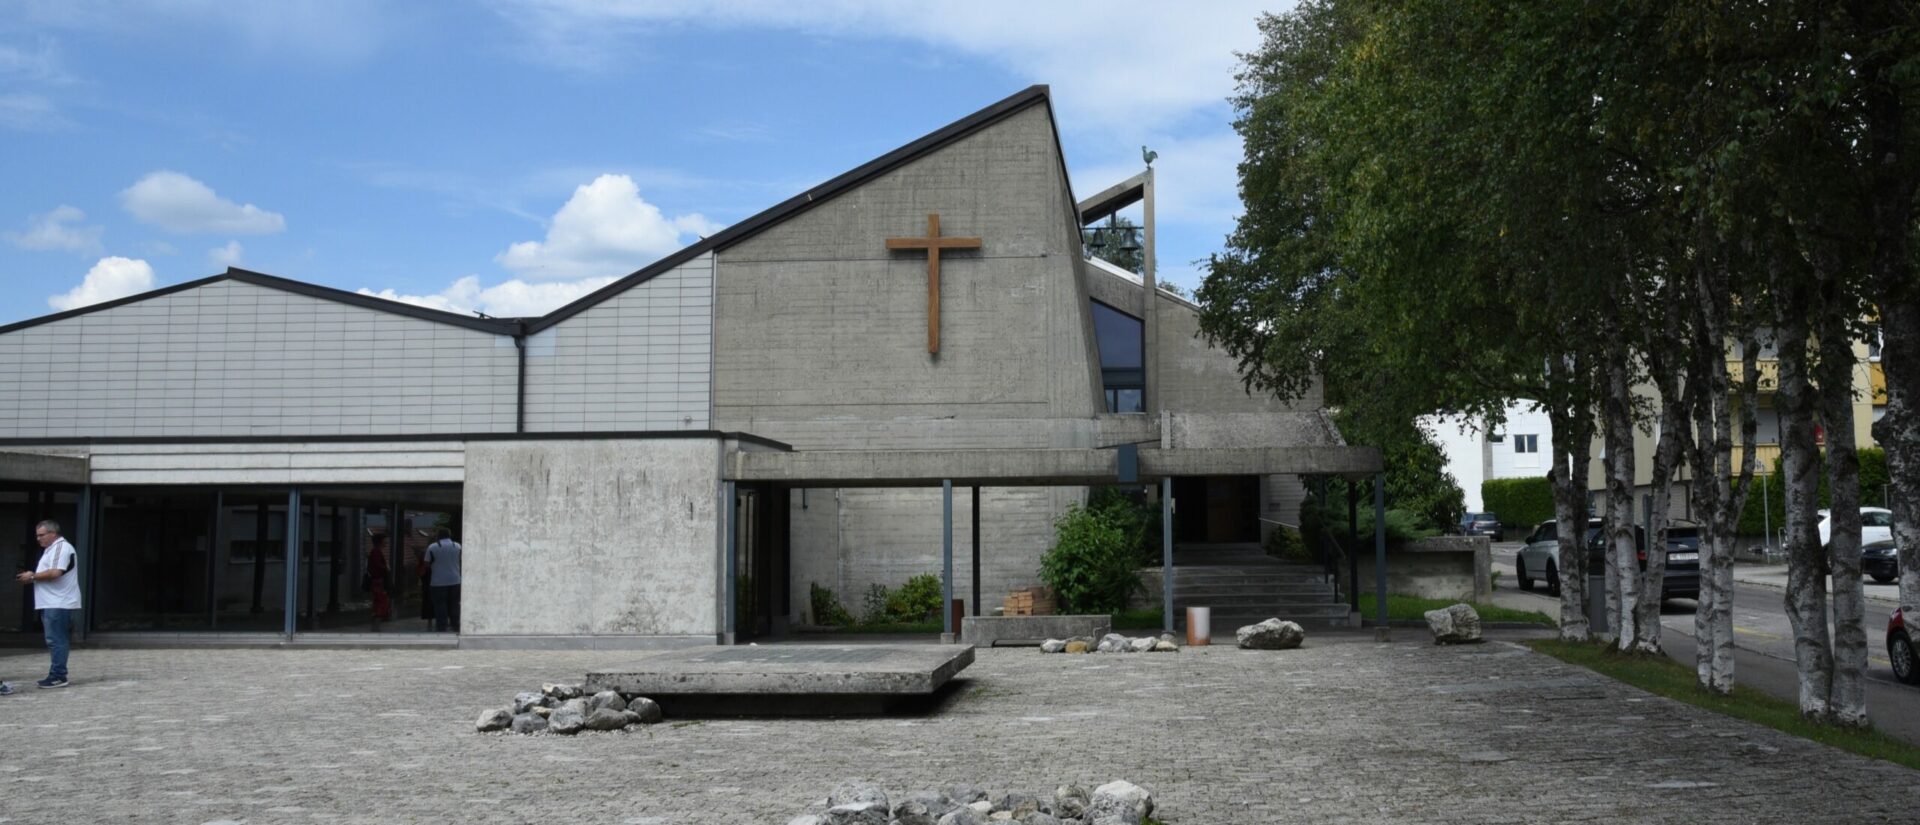 Le projet communautaire de l'UP des Montagnes neuchâteloises fonctionne très bien | photo: l'église Notre-Dame de la Paix, à La Chaux-de-Fonds © Raphaël Zbinden